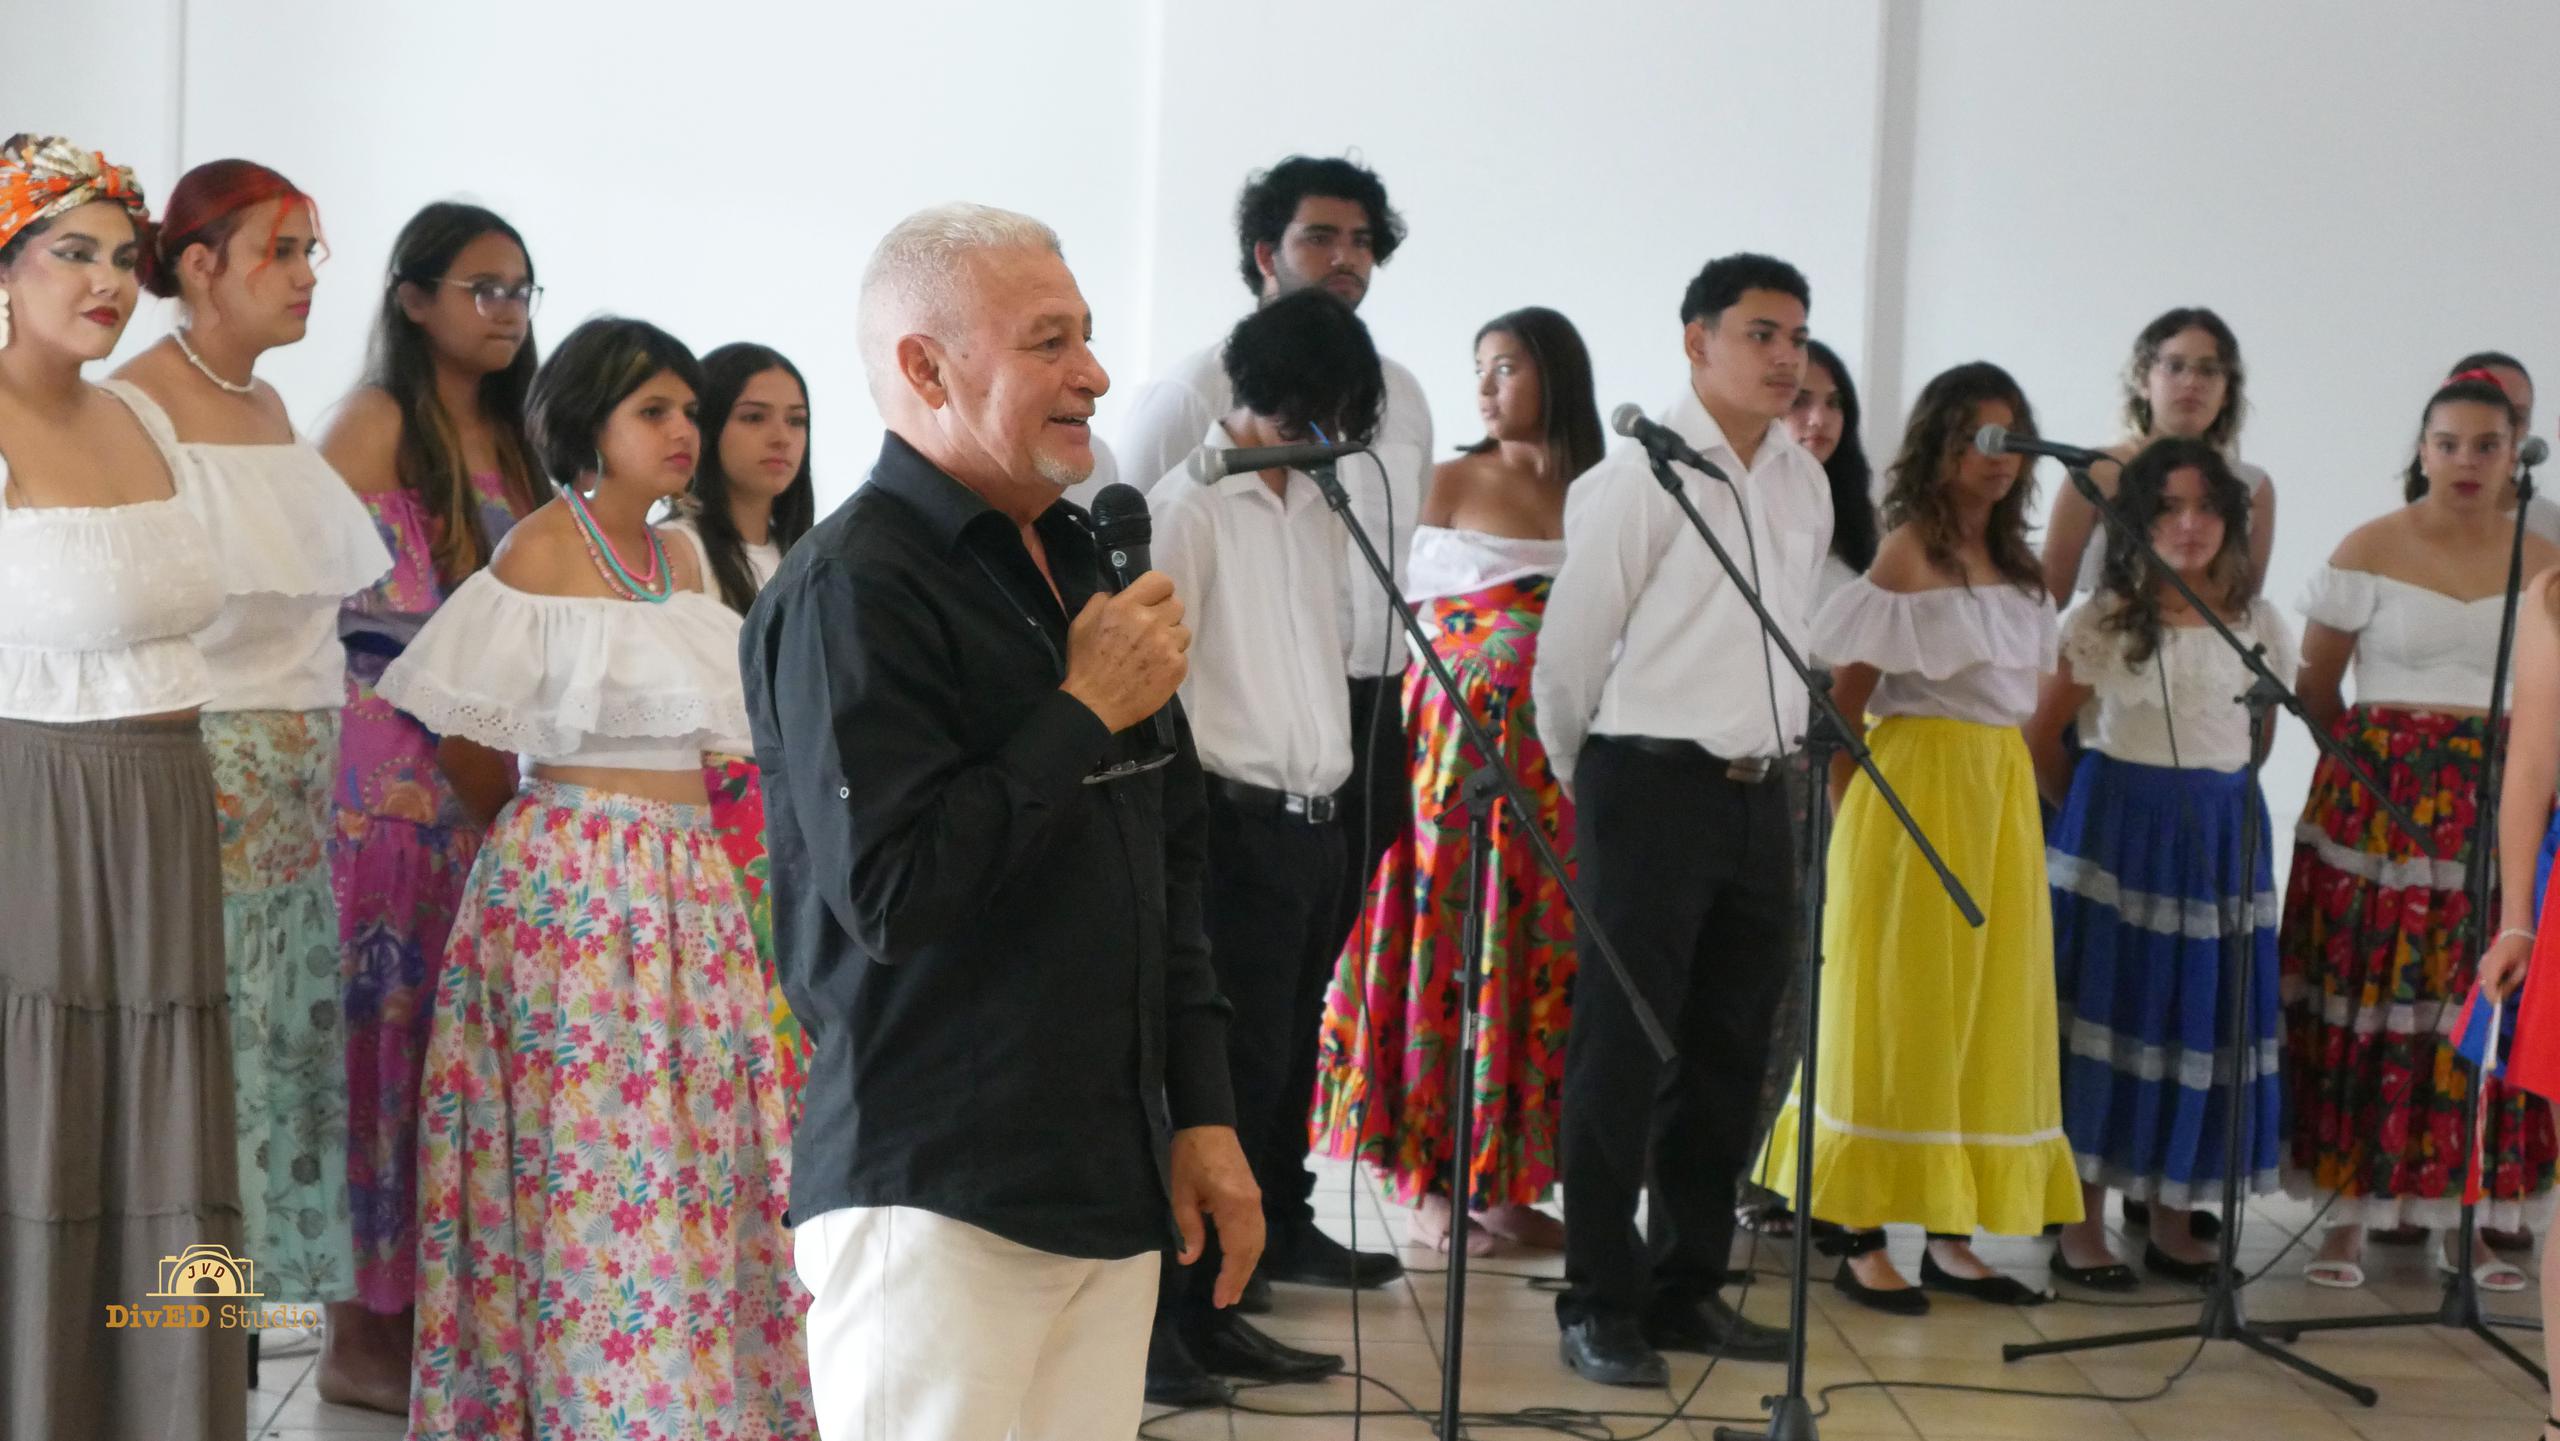 El evento tuvo la destacada participación del coro y grupos de baile de la Escuela Especializada en Bellas Artes, mejor conocido como CABA, de Aguadilla junto a sus profesores y director de la escuela.